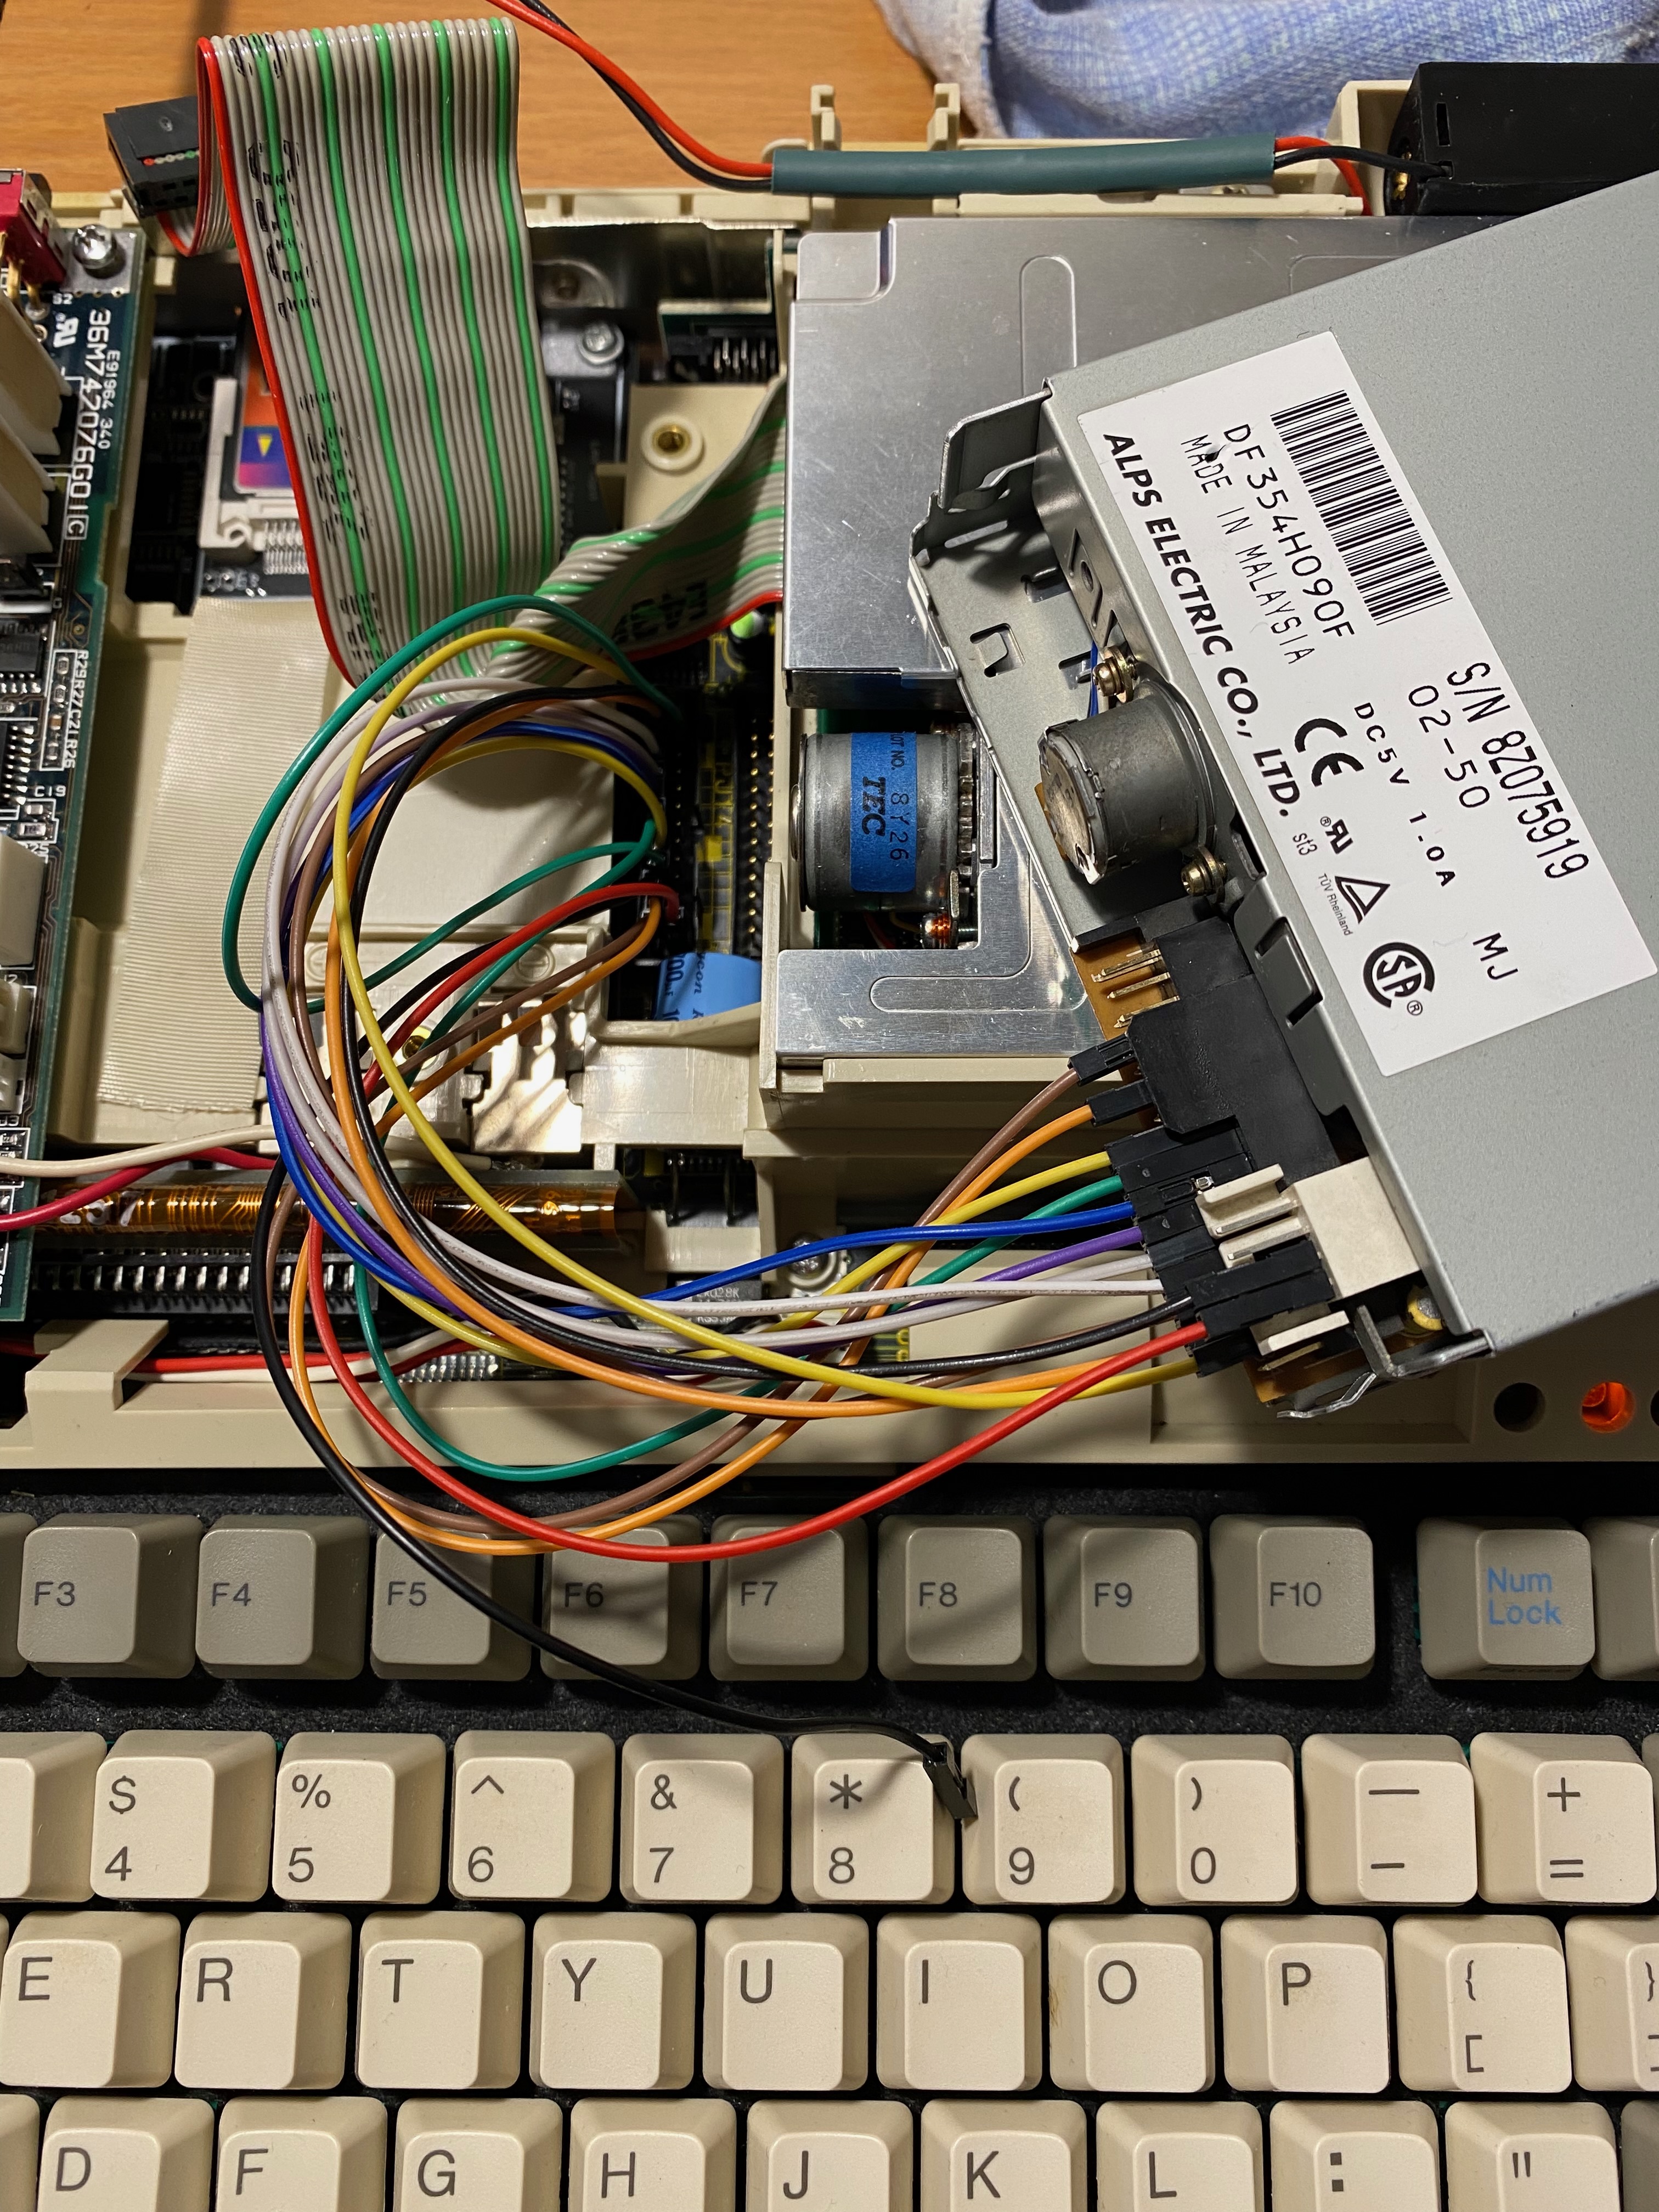 Дисковод 1,44 подключенный через перемычки к контроллеру Т1200